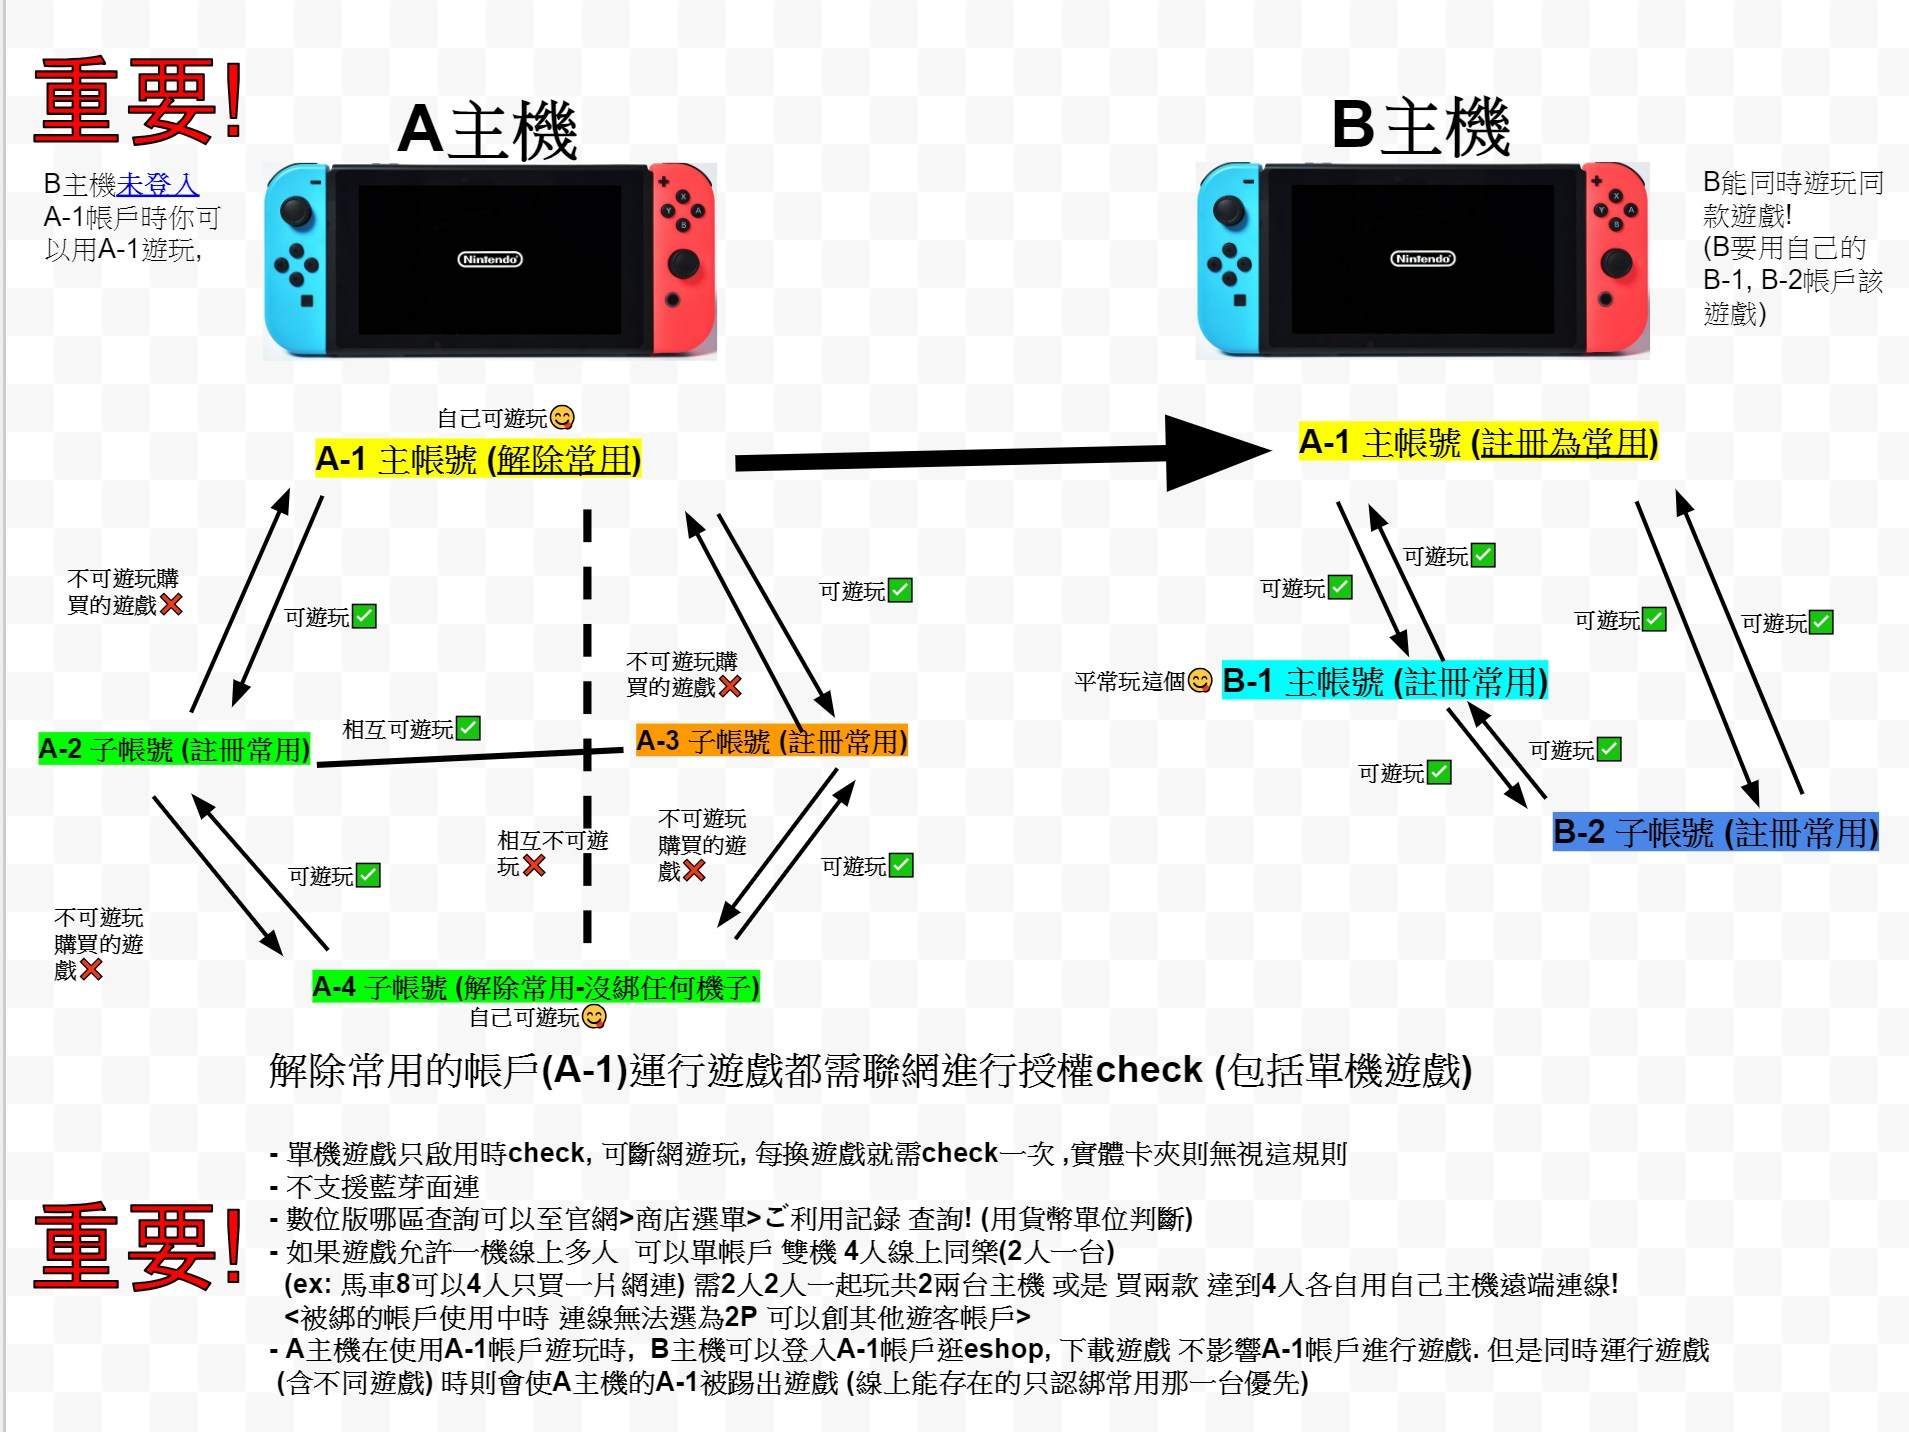 攻略 Ns 一帳戶雙主機共享遊戲 Ns Nintendo Switch 哈啦板 巴哈姆特